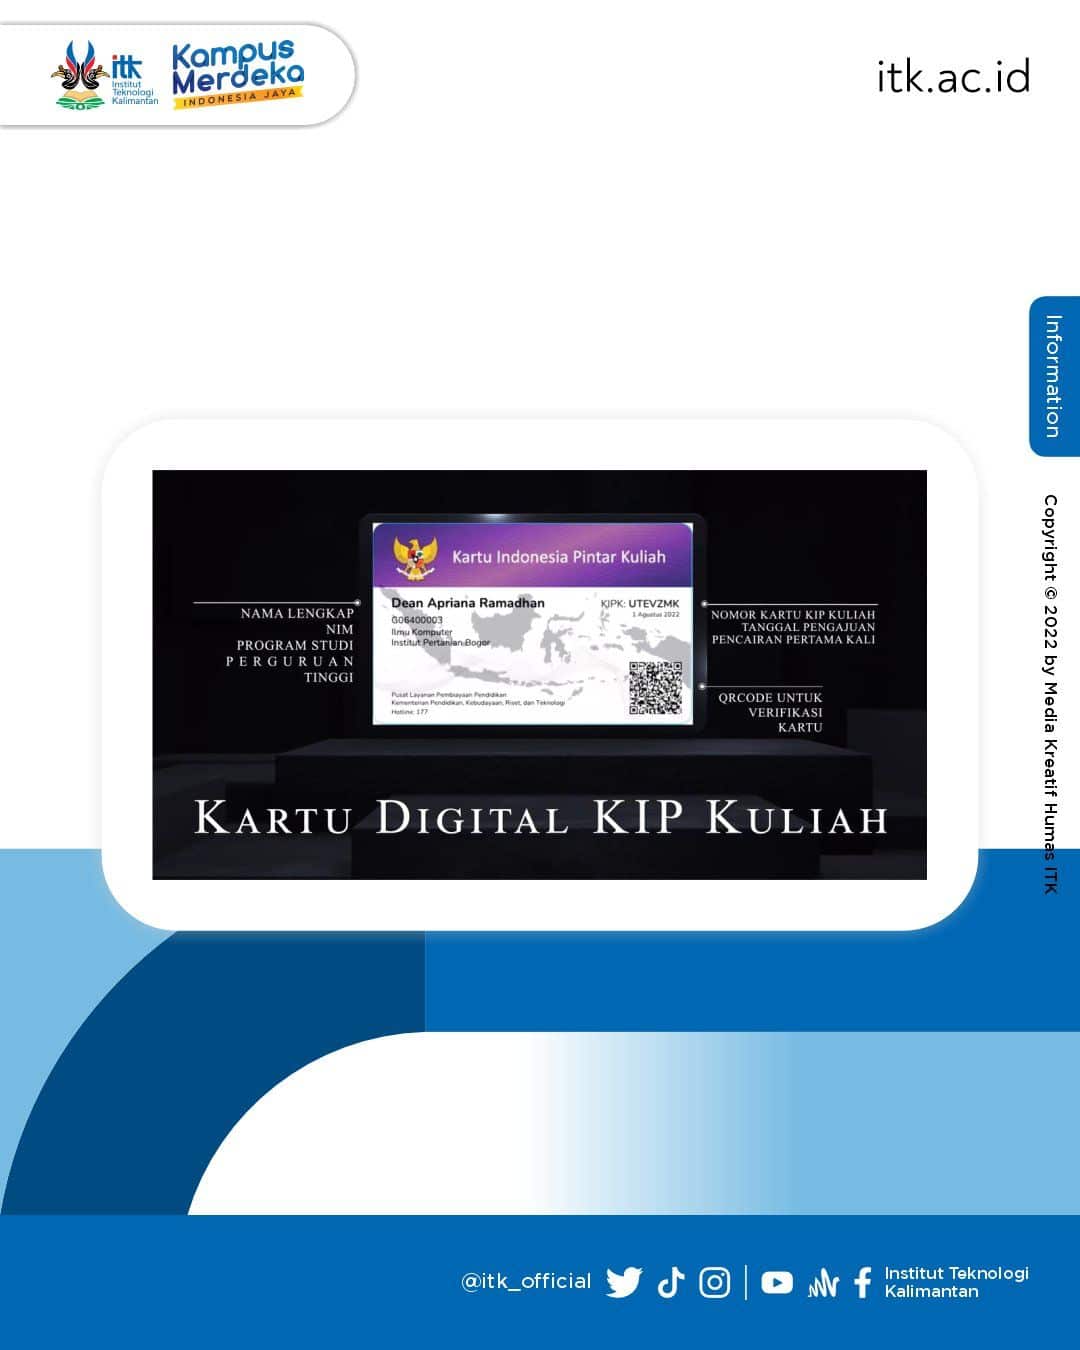 https://www.ayovaksindinkeskdi.id/cara-dapatkan-kip-kuliah-digital-/(opens in a new tab)